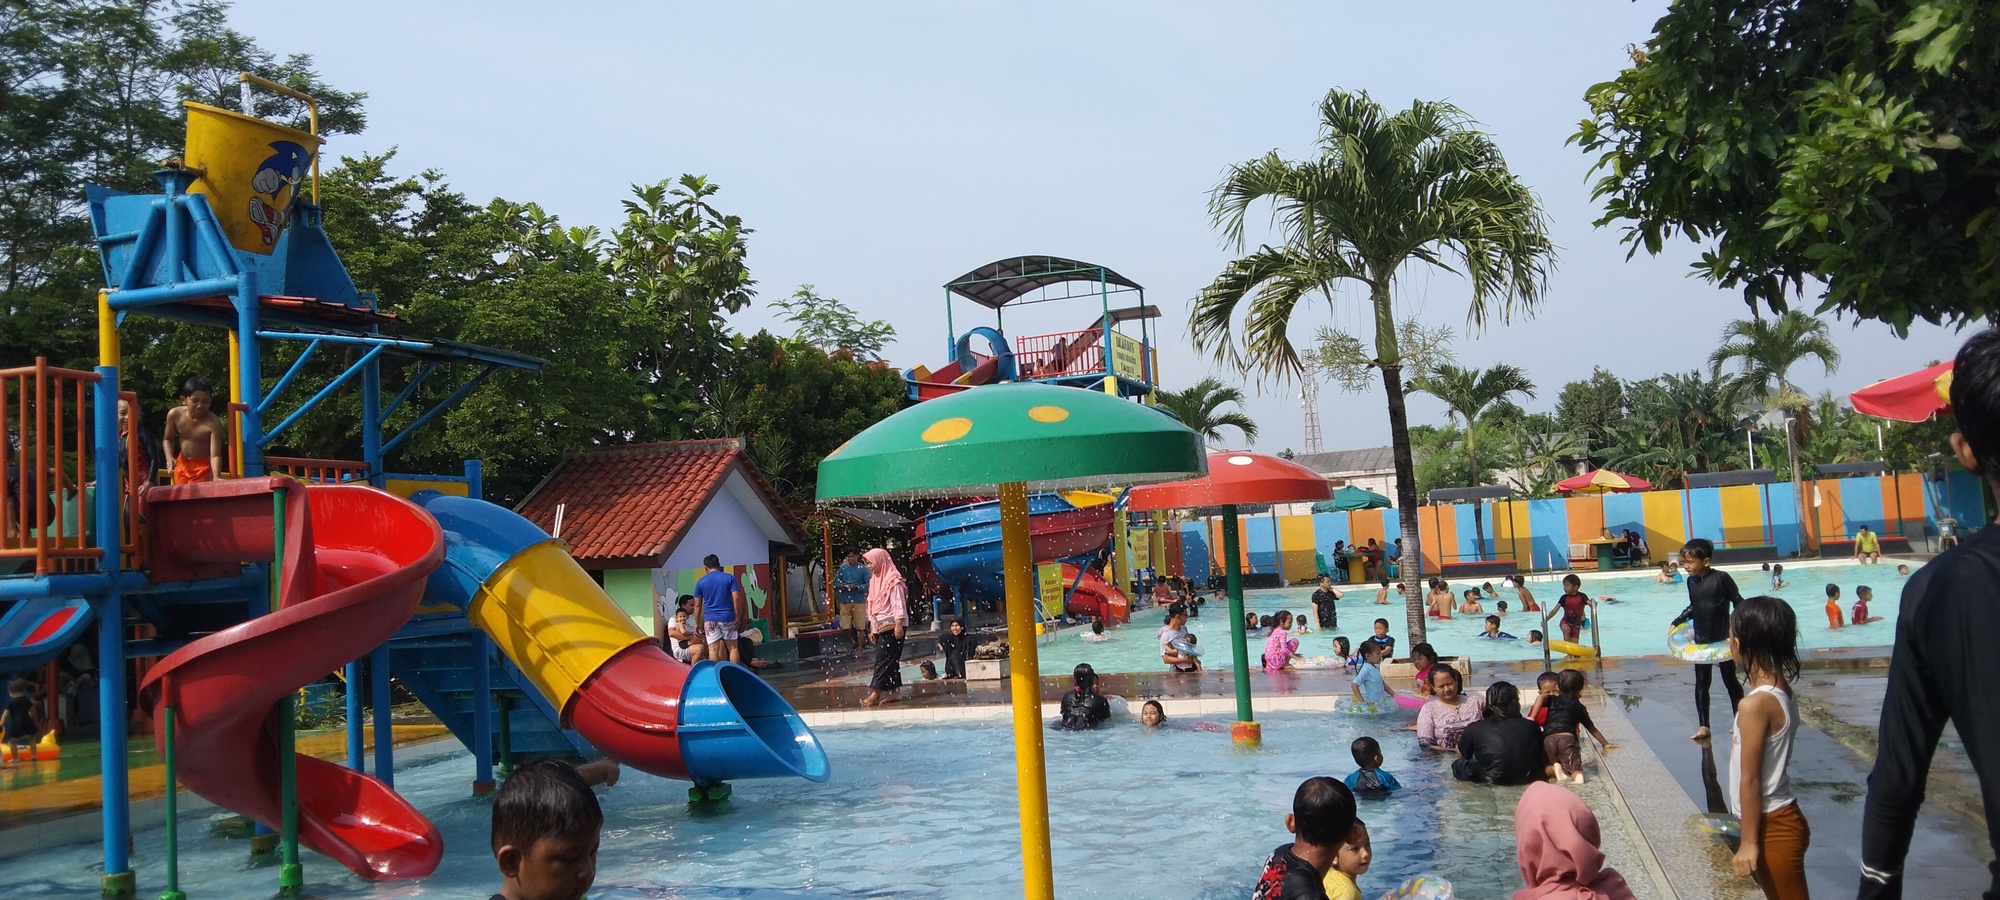 Wisatawan Sedang Berenang dan Bermain Air di Kolam Renang Anak-Anak dan Kolam Renang Dewasa Arina Waterpark